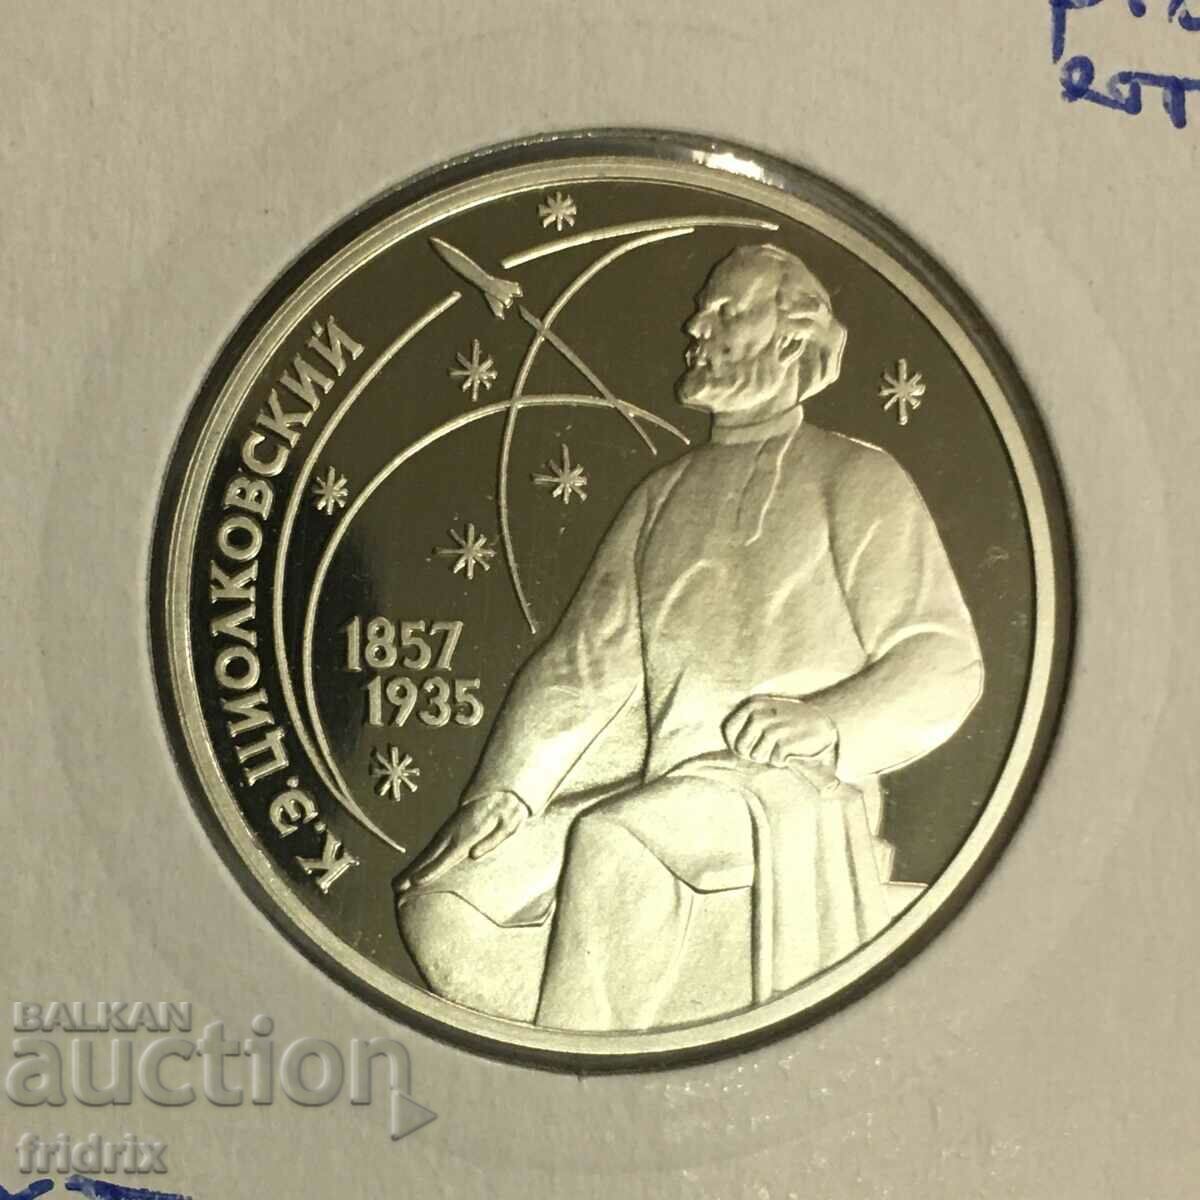 Russia USSR 1 ruble yub. error / Russia USSR 1 ruble 1987